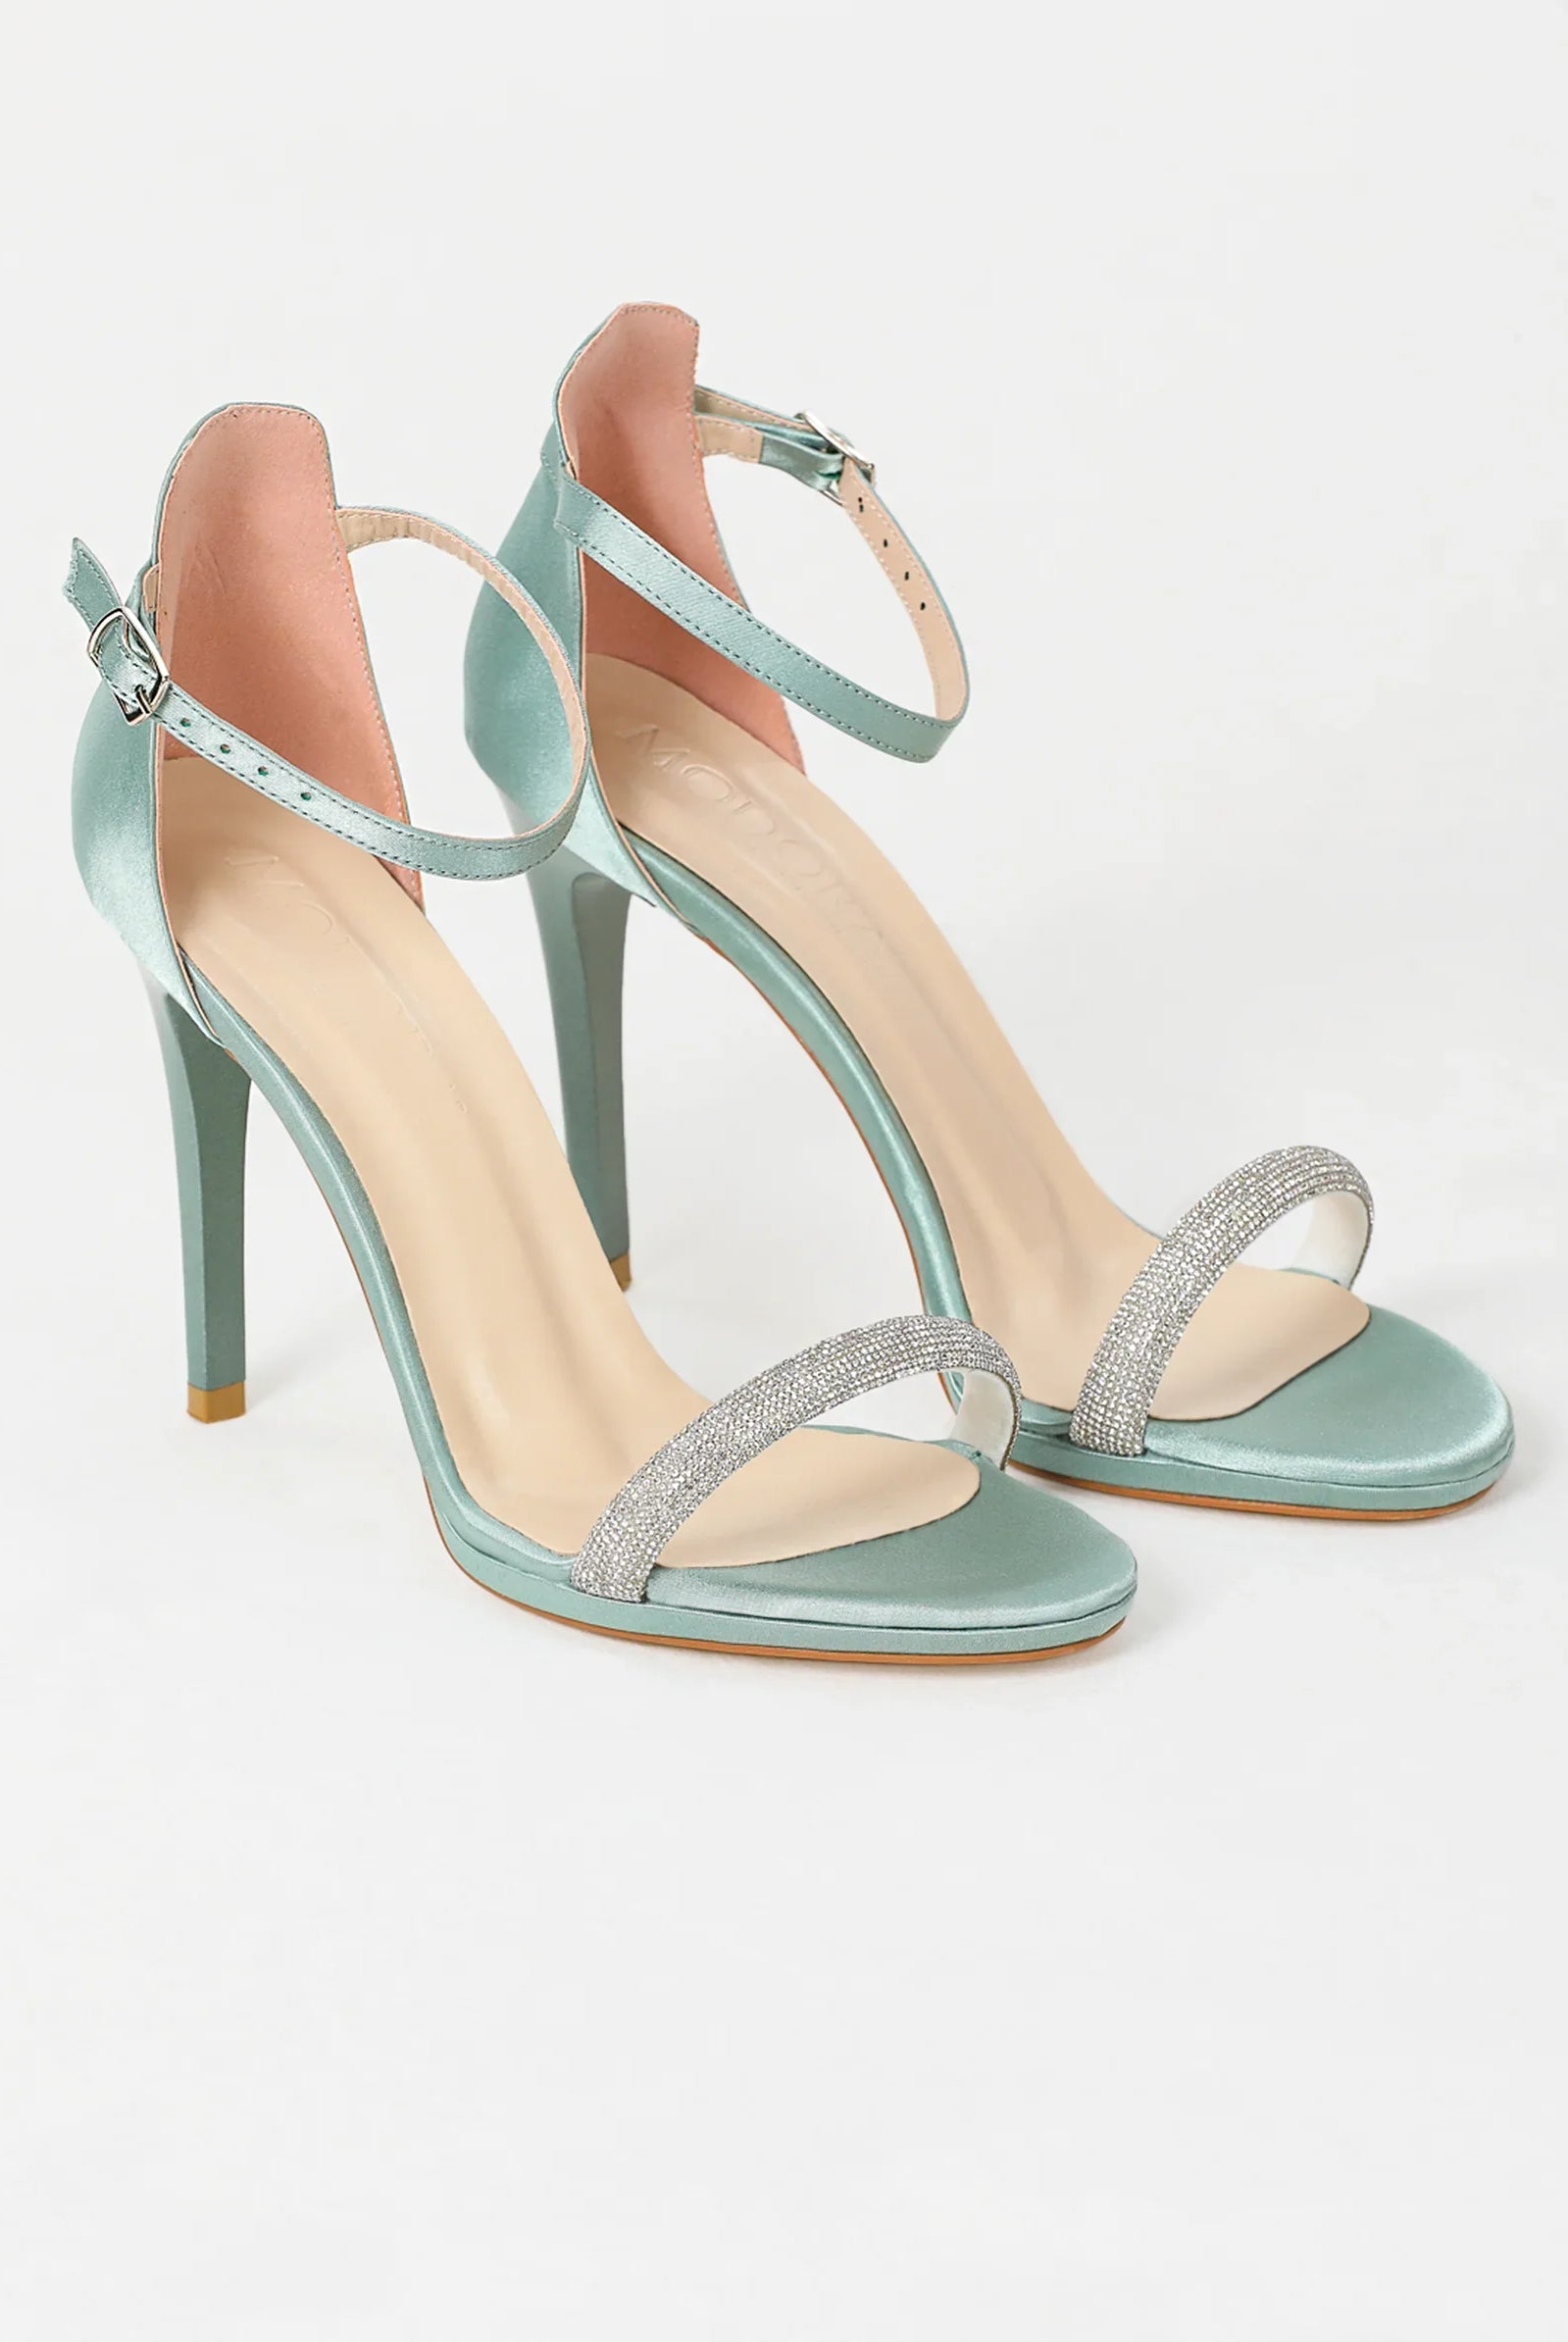 green heels for women